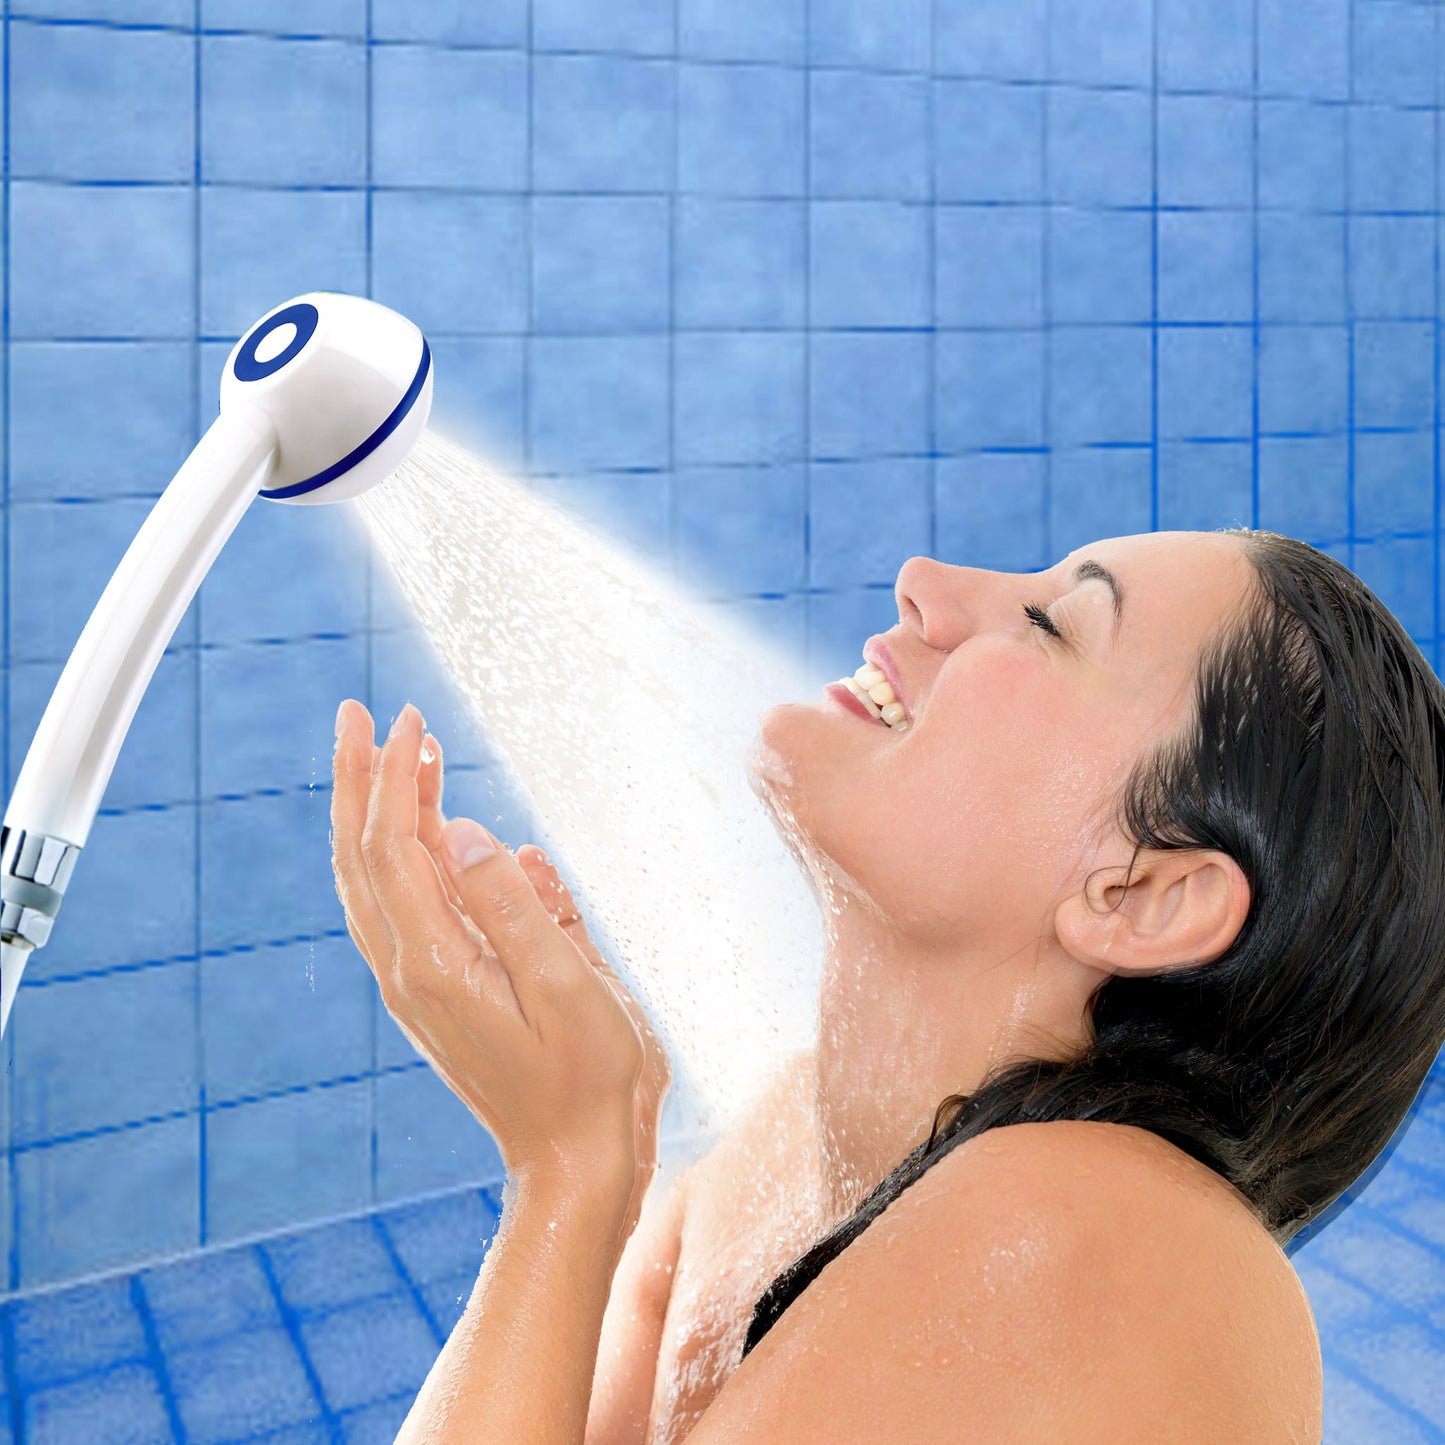 Mädchen im Profil und brauenen Haaren duscht mit SwissClima-Duschkopf metallfrei, weiss, in Dusche mit blauen Kacheln